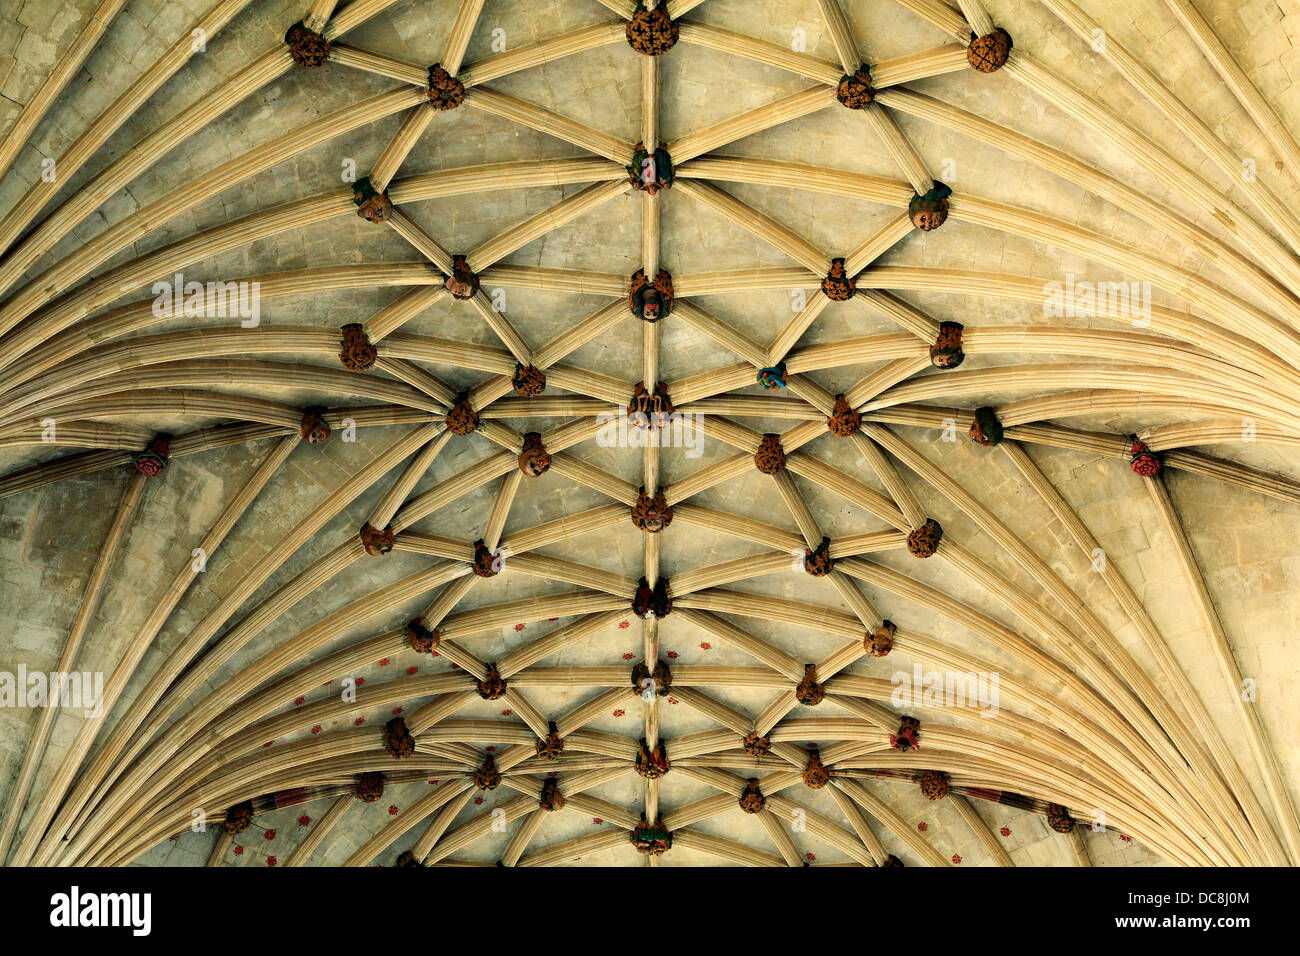 Cathédrale d'Ely, Dame Chapelle, lierne vault toit plafond 14e siècle anglais architecture médiévale Cambridgeshire England UK roofs Banque D'Images